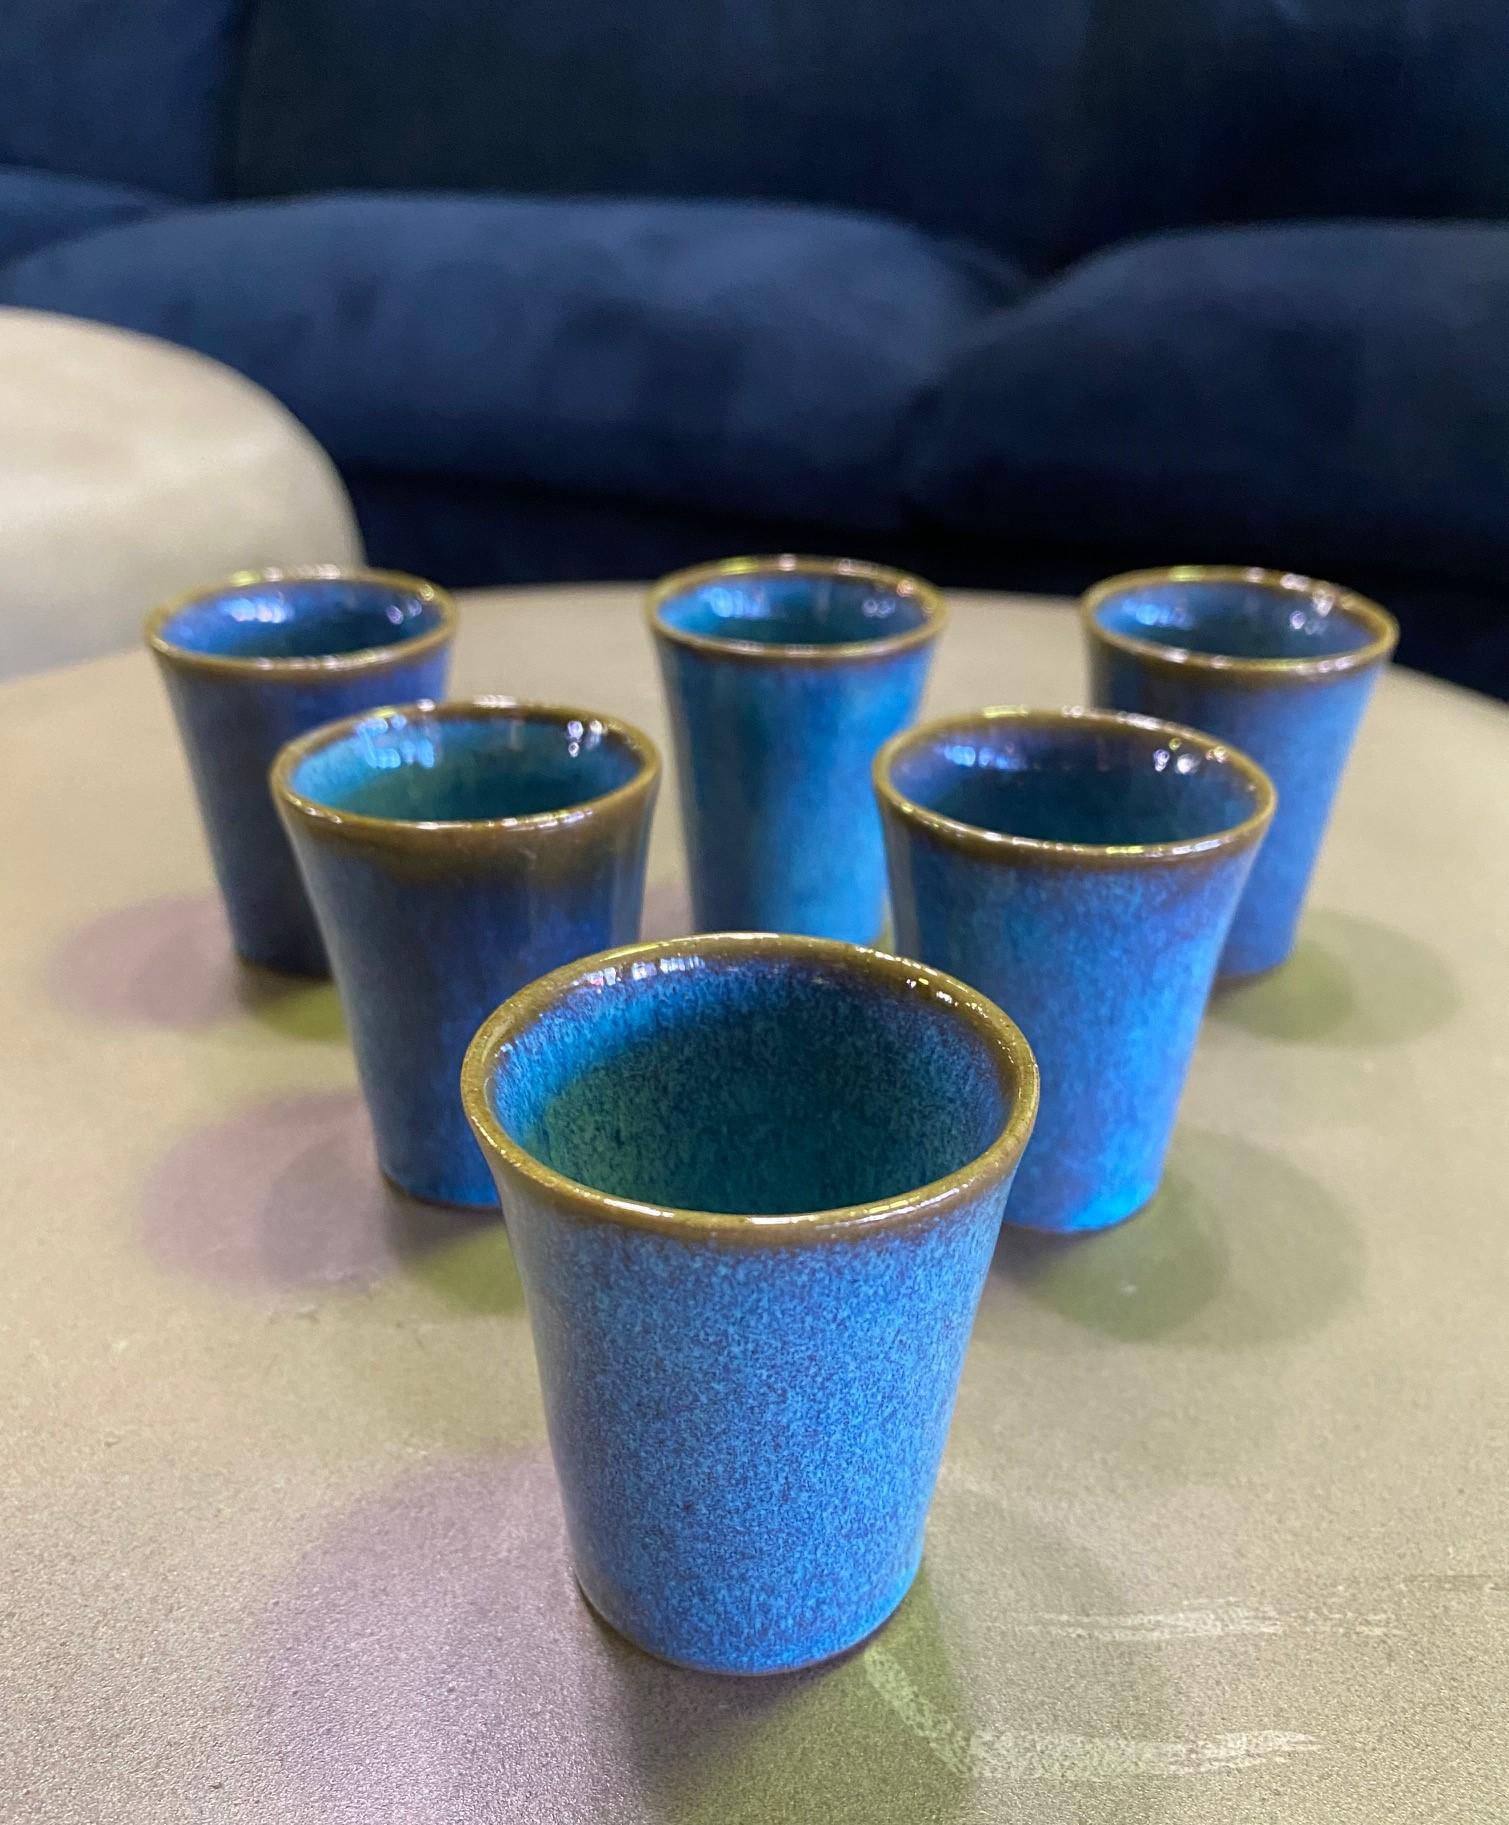 Ein exquisit geformter und tiefblau glasierter Satz von sechs Sake-/Likörbechern aus Keramik des renommierten amerikanischen Westküsten-Keramikers Harrison McIntosh, der für seine Keramik im Mid-Century Modern Design berühmt war.

Mcintoshs Werke